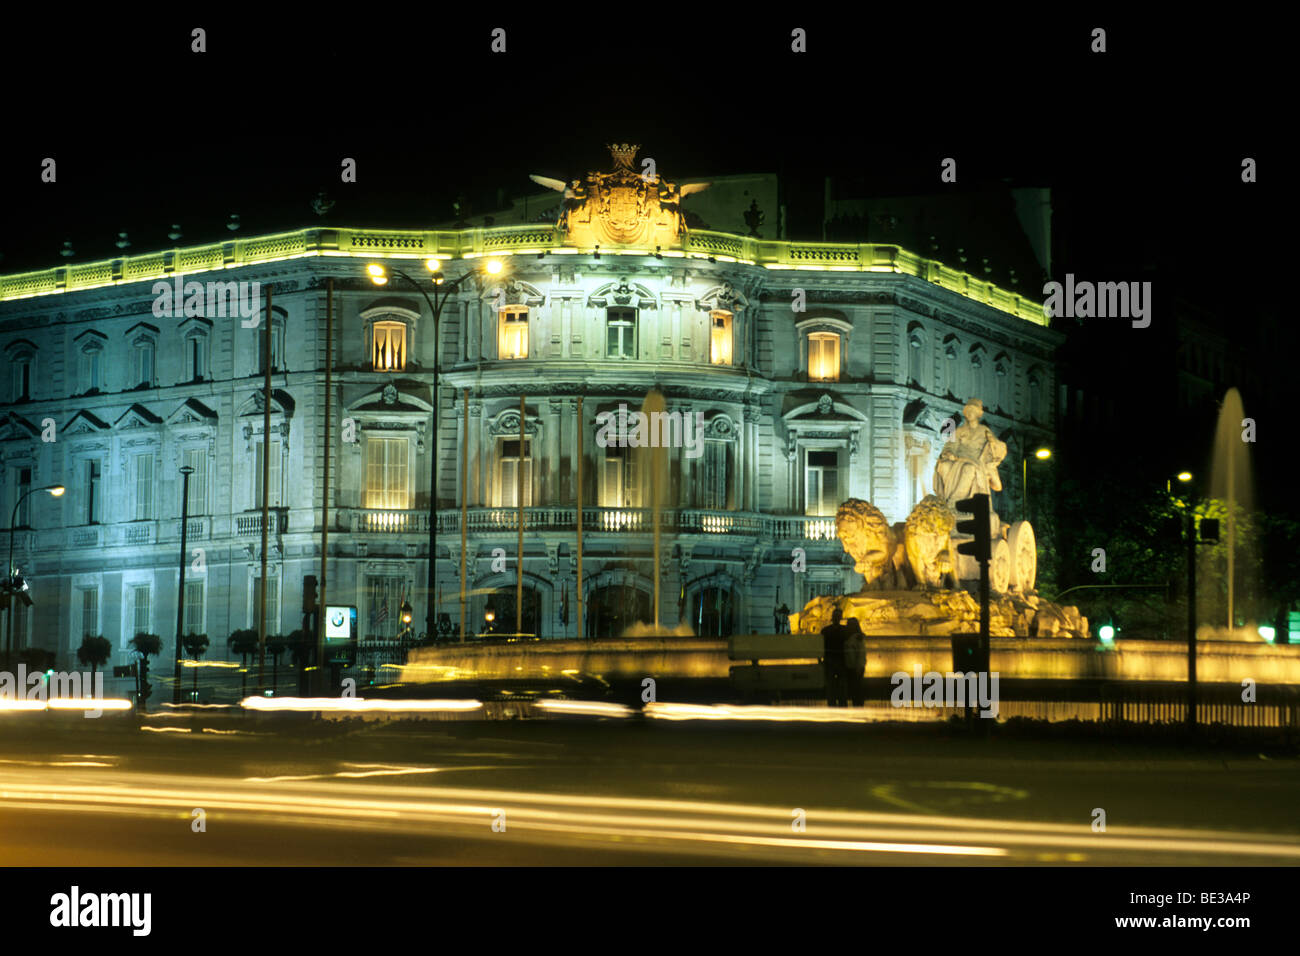 Neo-baroque palace Palacio de Linares at night, Casa America, Plaza de la Cibeles, Madrid, Spain, Europe Stock Photo